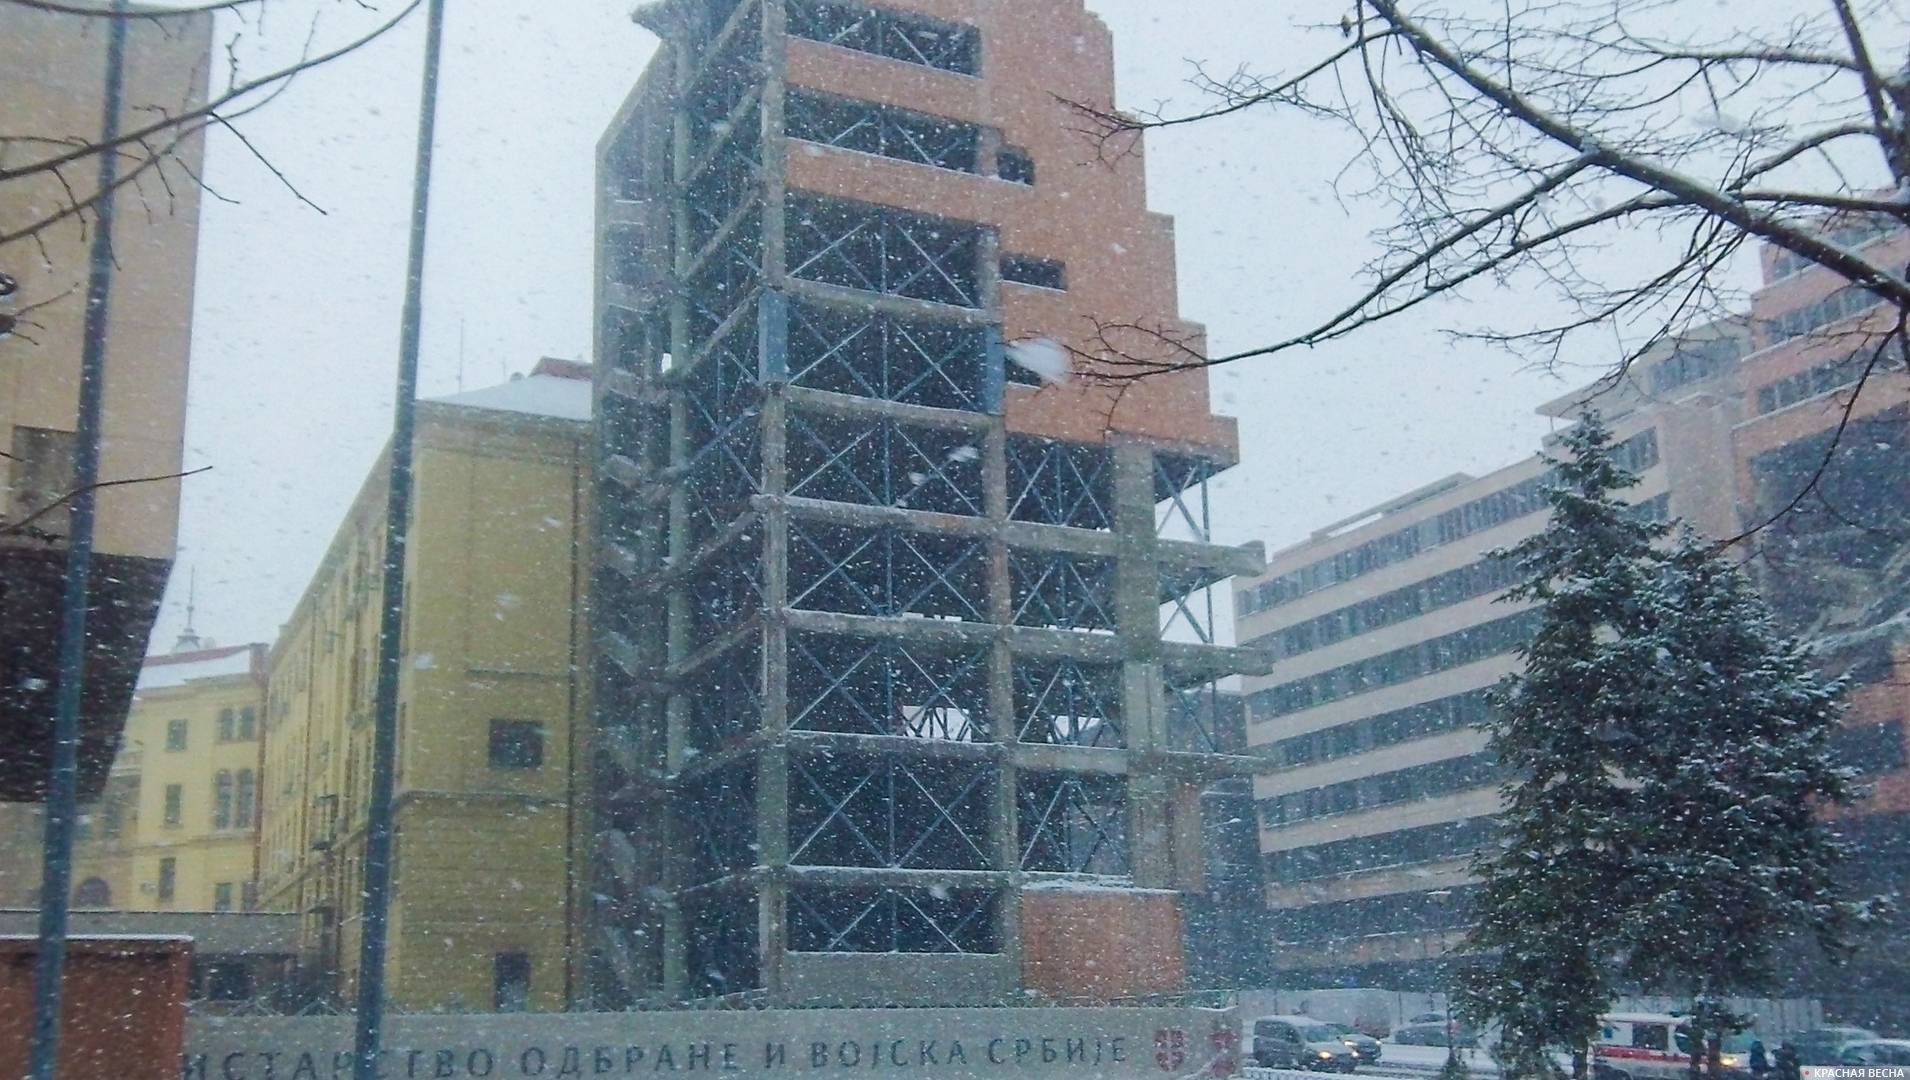 Разрушенный Главный штаб Вооруженных сил Сербии, Мемориал бомбардировкам НАТО, Белград, Сербия